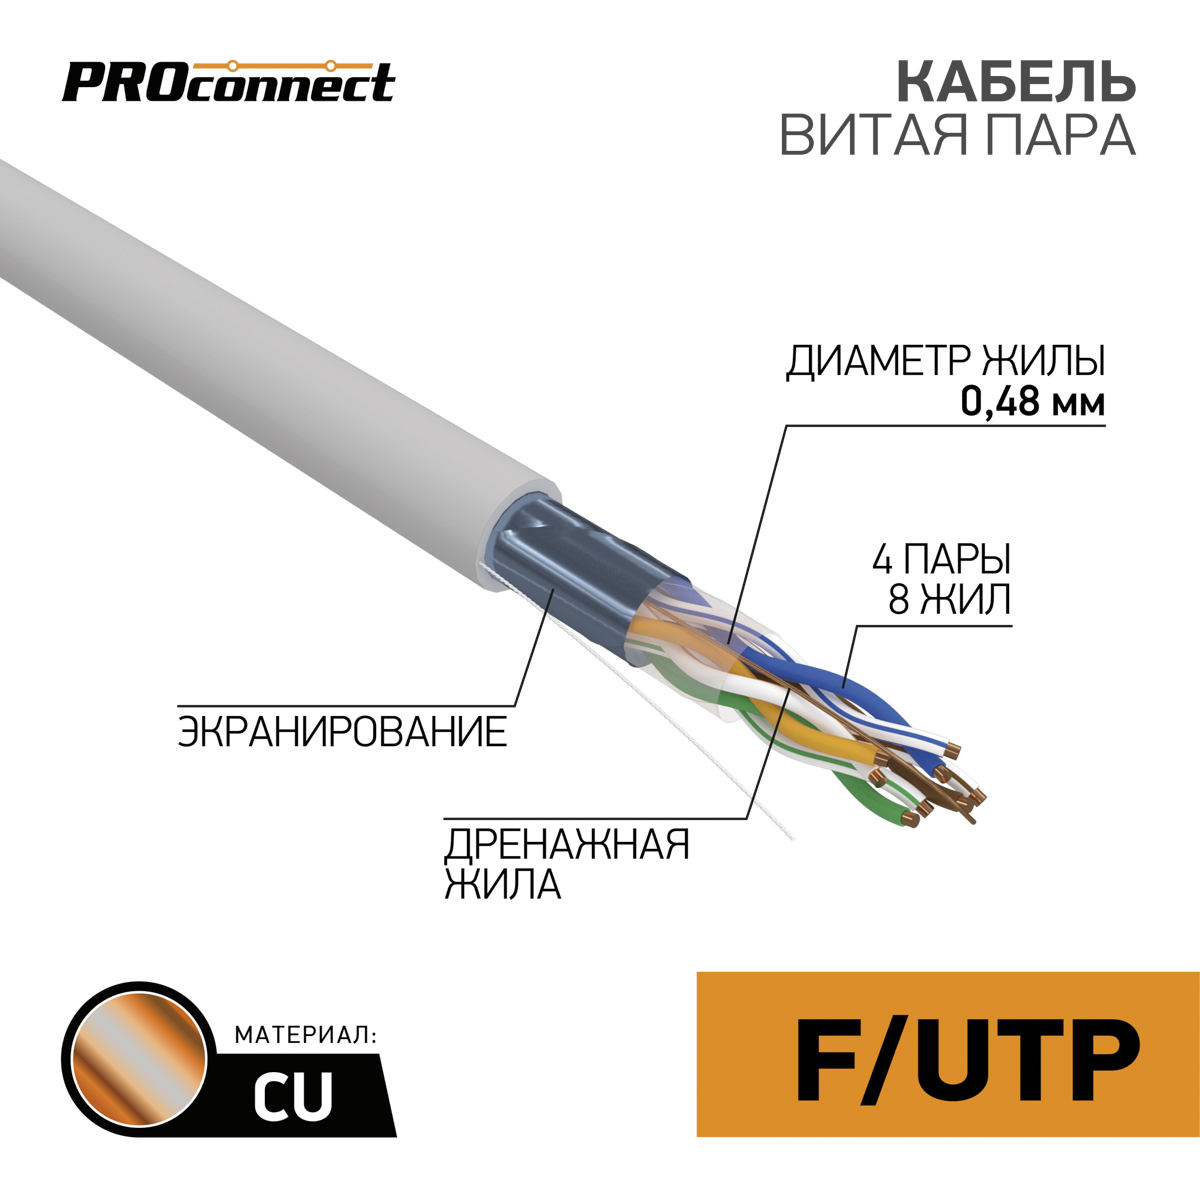 Кабель FTP 4 x 2 x 0,48 мм, cat 5e, 1 м.,  PROCONNECT  в Самаре